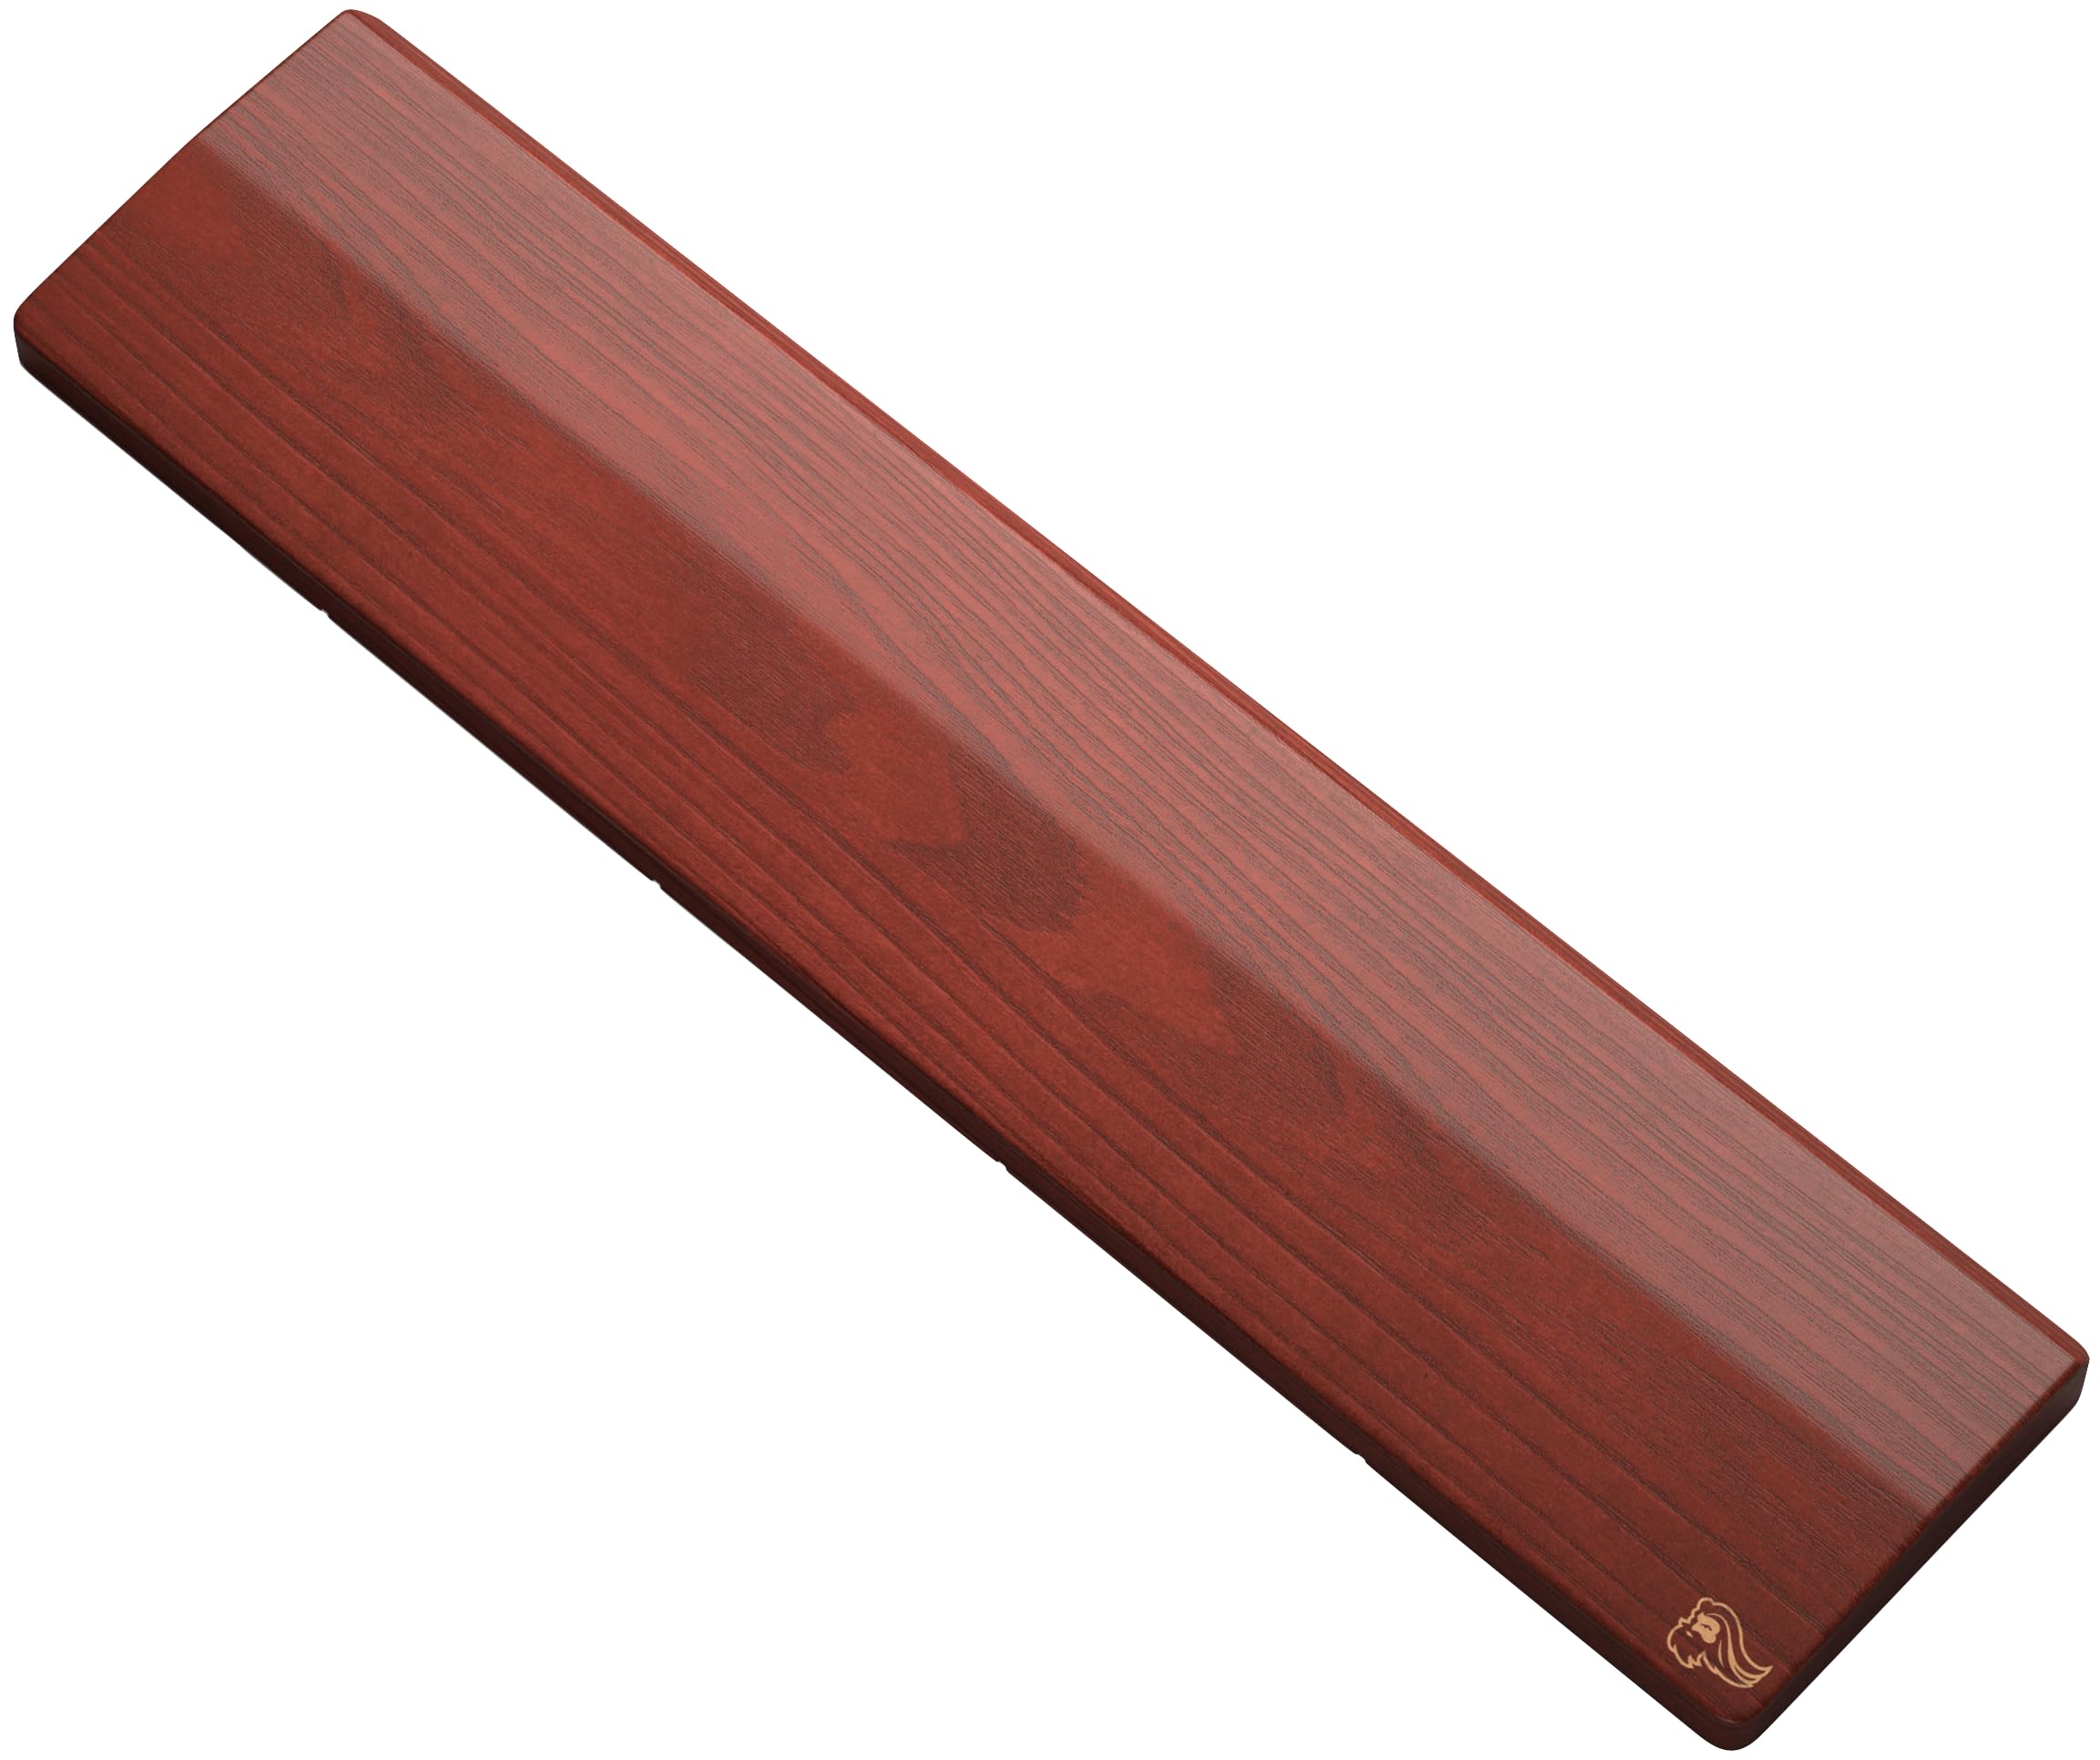 Glorious Gaming Wooden Keyboard Wrist Rest (Full Size) - Weiße Esche, mittelgrobe Maserung, glatte Oberfläche, schweiß- und ölbeständig, rutschfeste Gummibasis, 430 x 100 x 19mm - Golden Oak